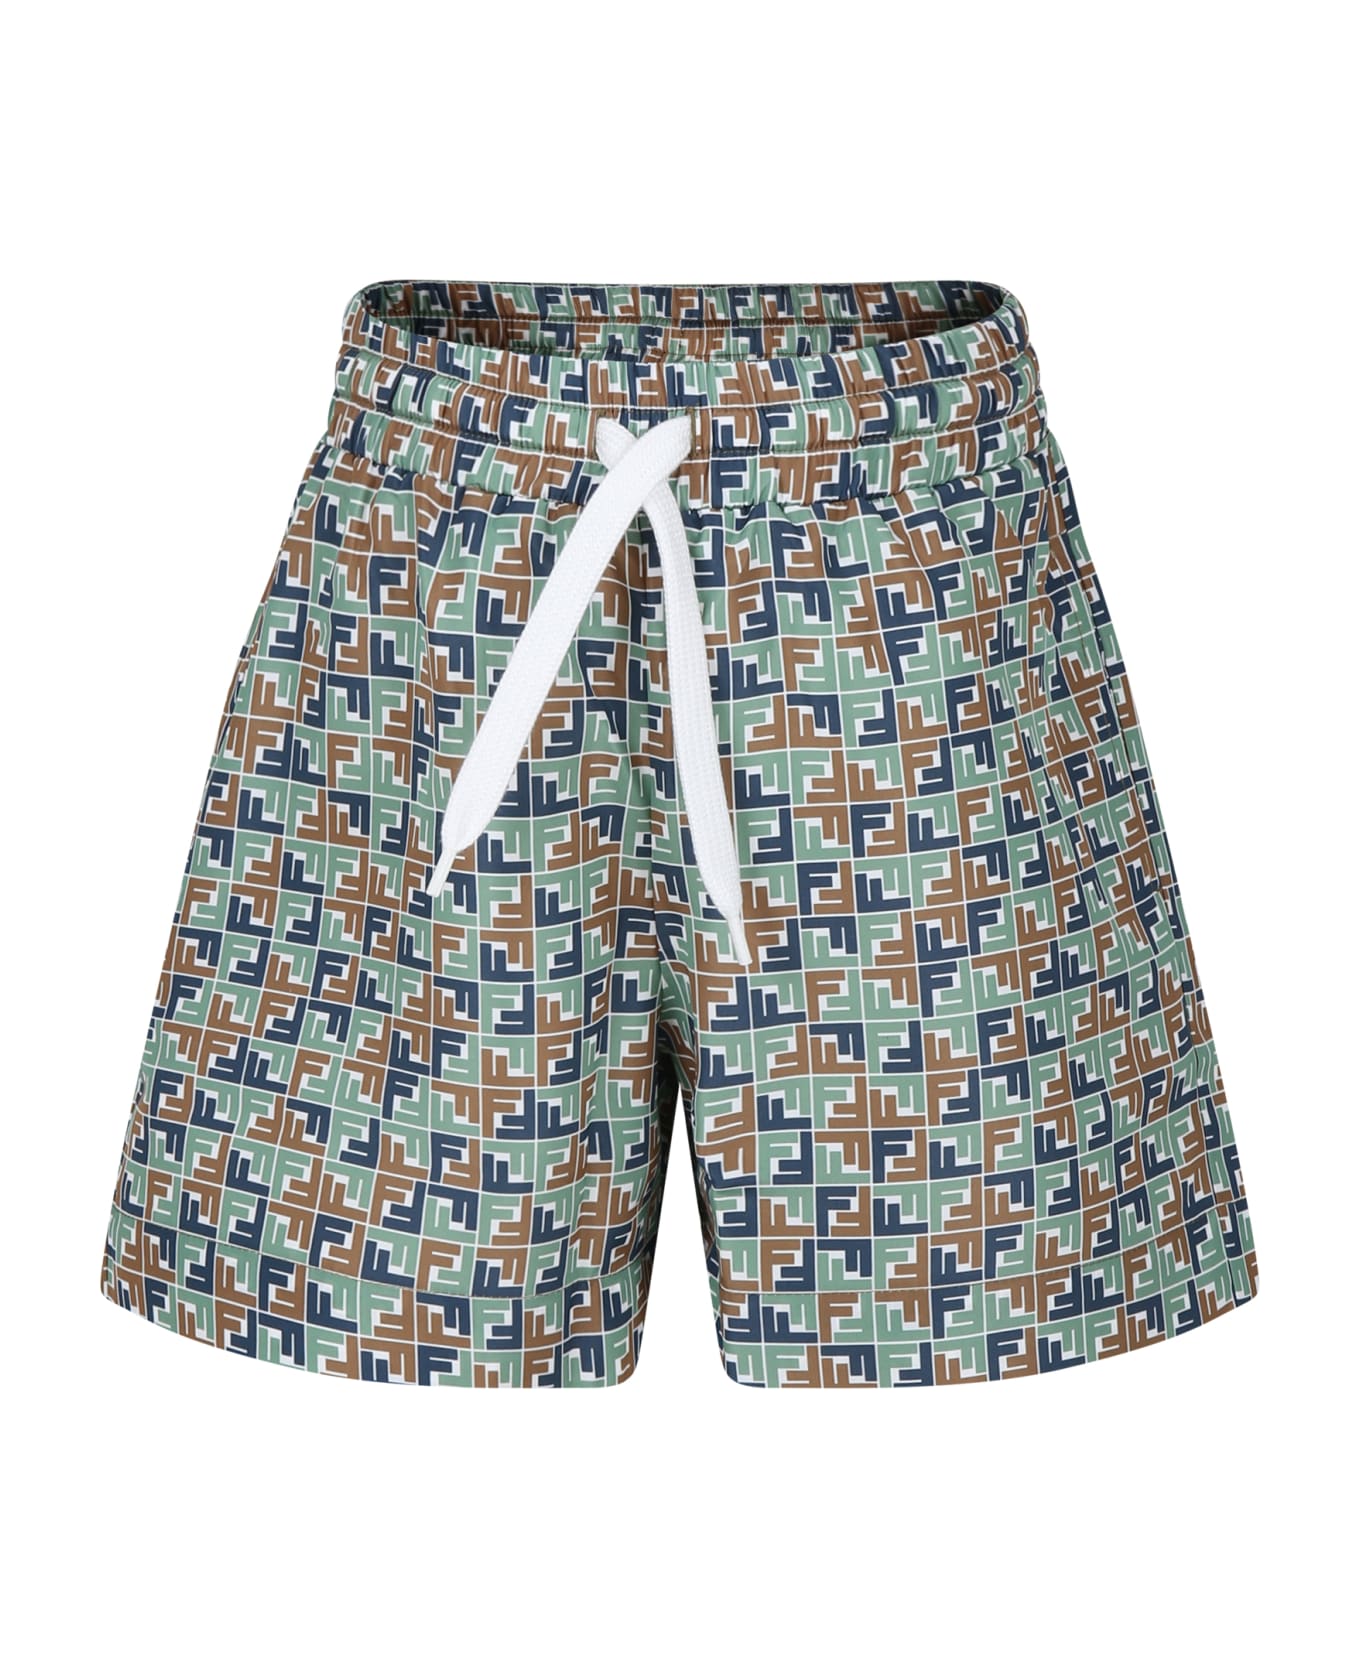 Fendi Multicolor Swim Shorts For Boy With Iconic Ff - Multicolor 水着